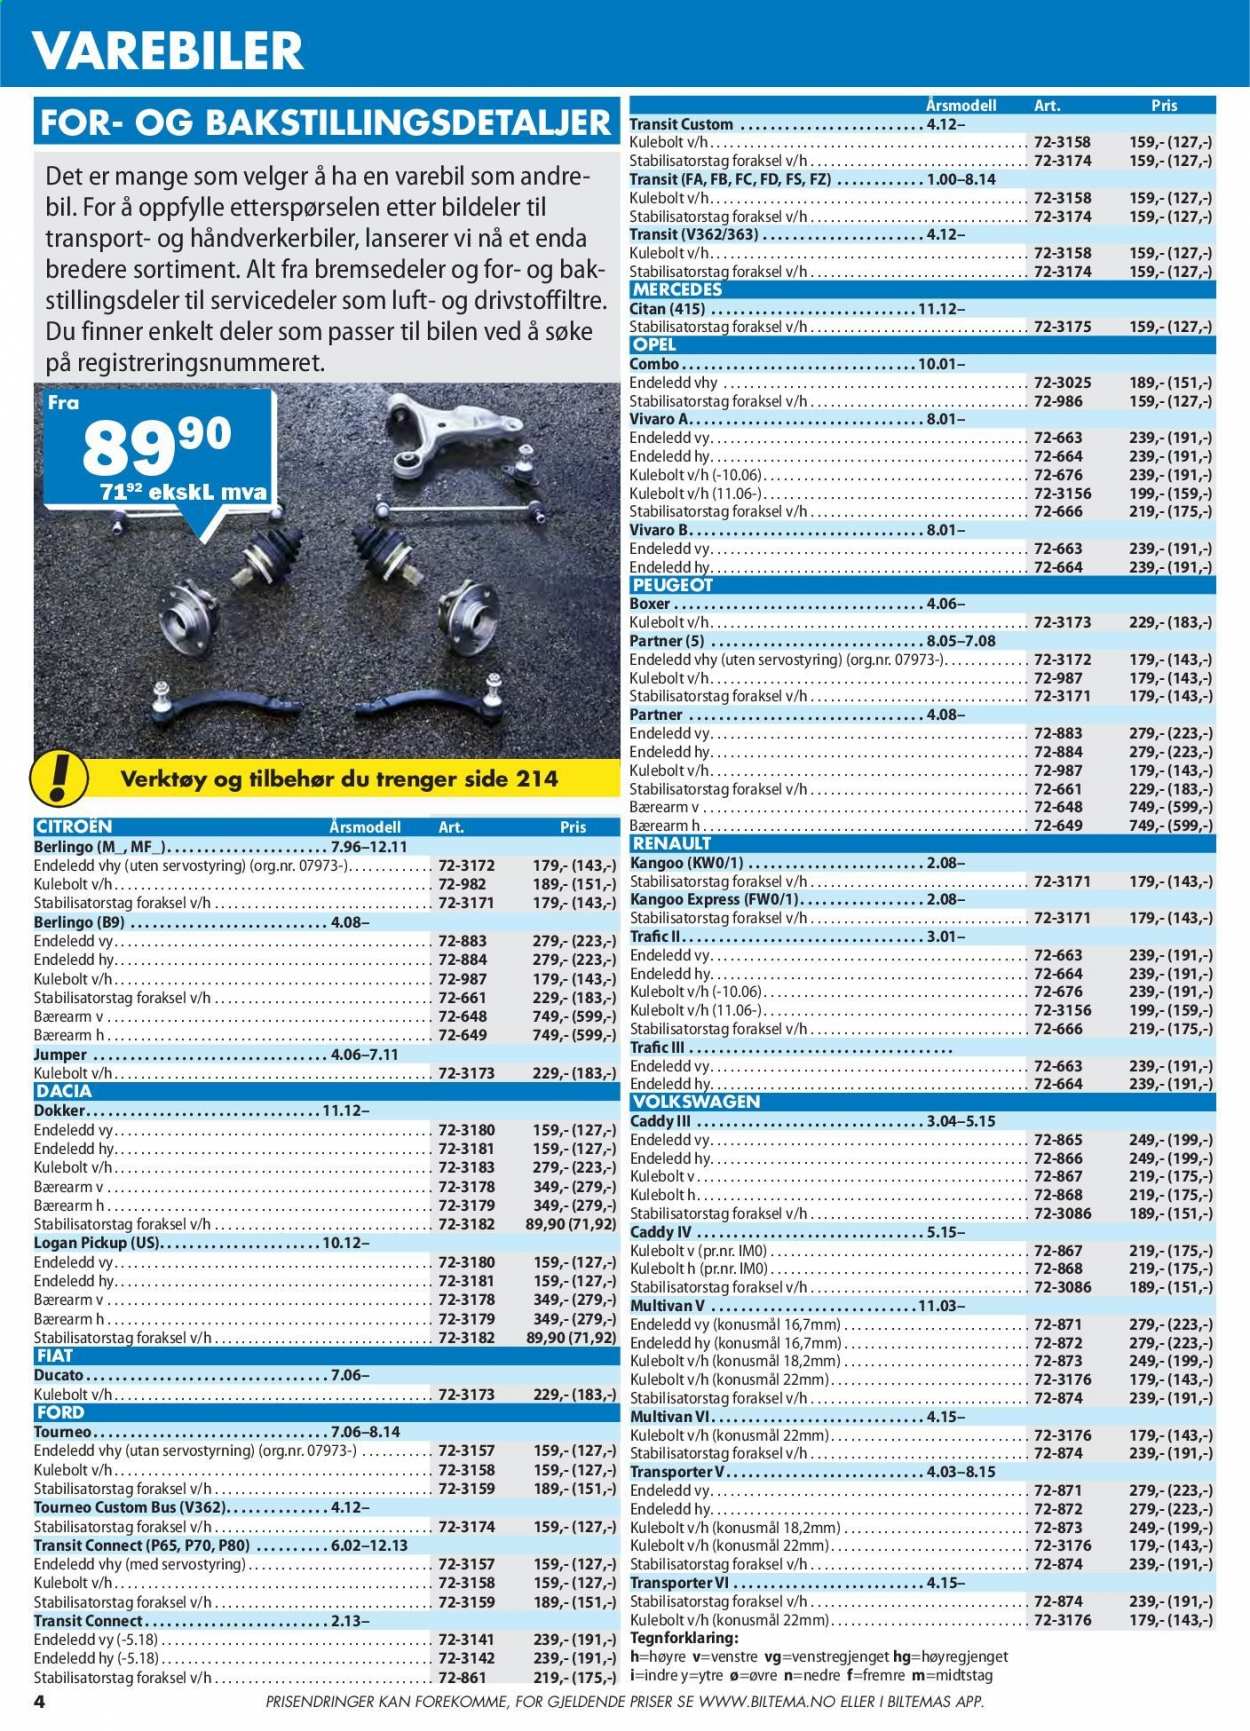 thumbnail - Kundeavis Biltema - Produkter fra tilbudsaviser - verktøy. Side 4.